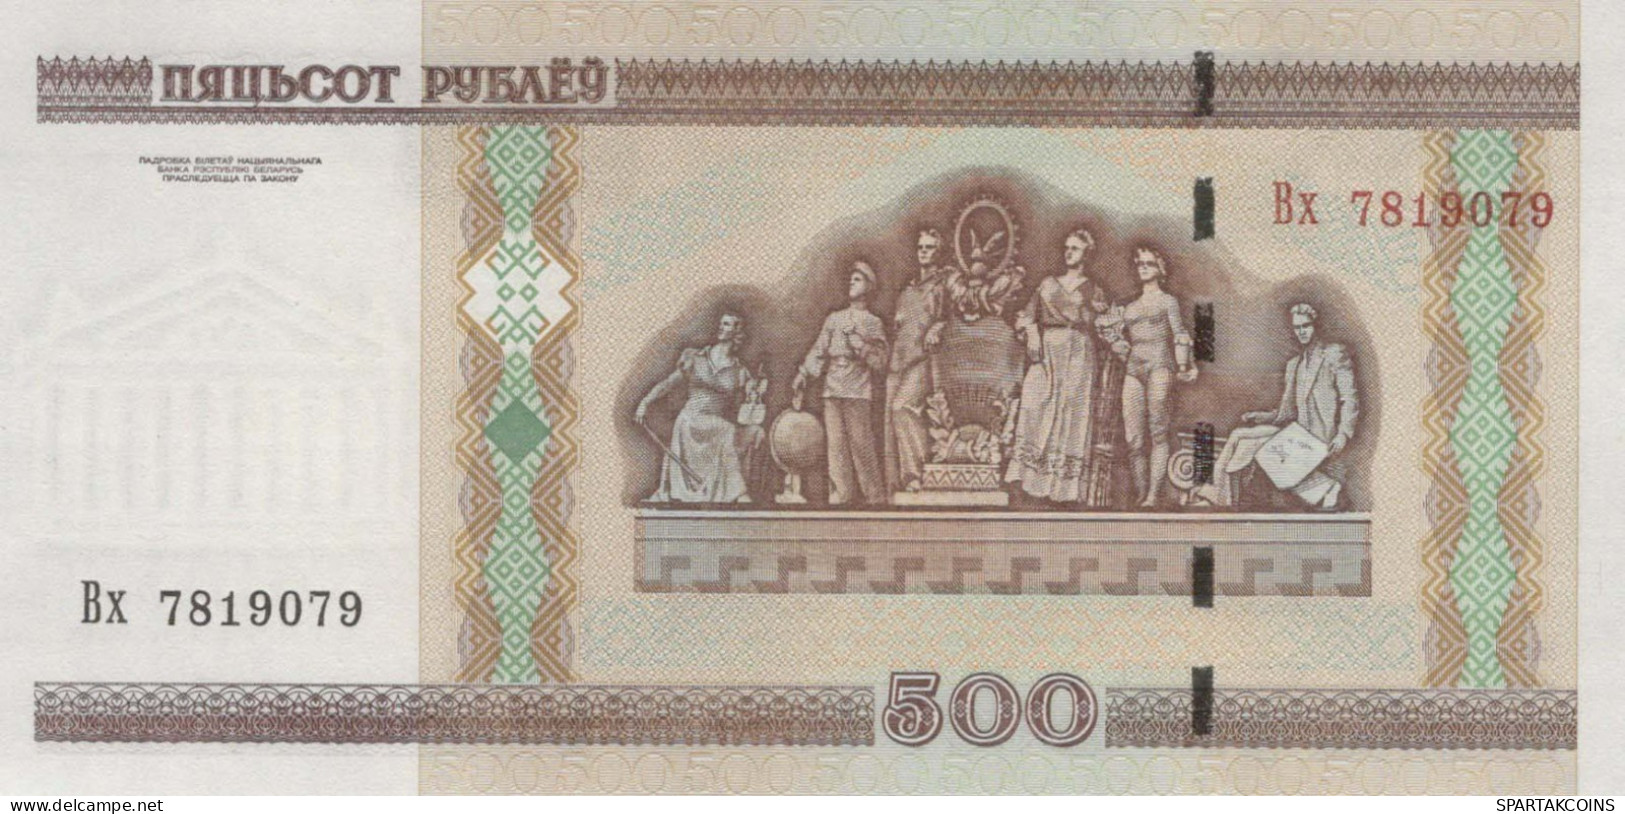 500 RUBLES 2000 BELARUS Paper Money Banknote #PJ309 - Lokale Ausgaben